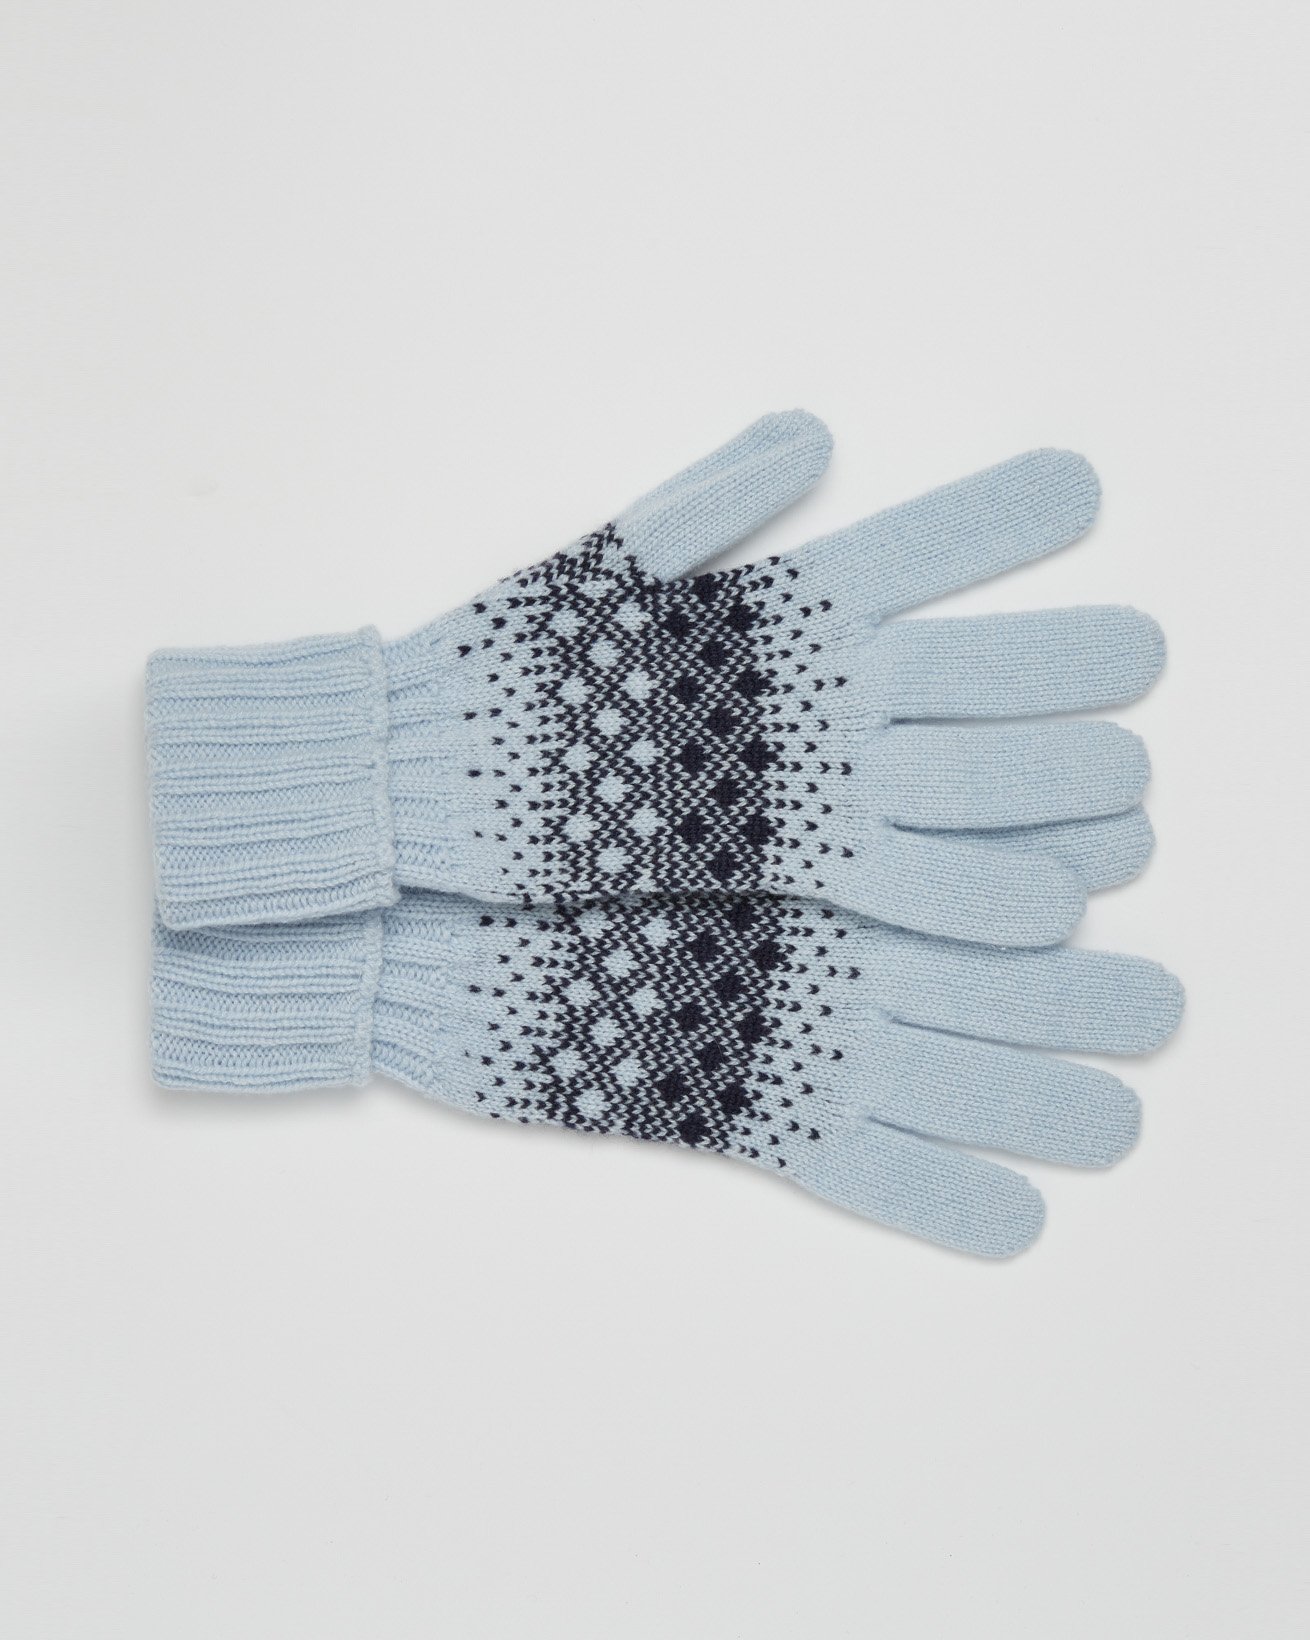 2453-cashmere fairisle gloves - one size - navy, light blue - back.jpg